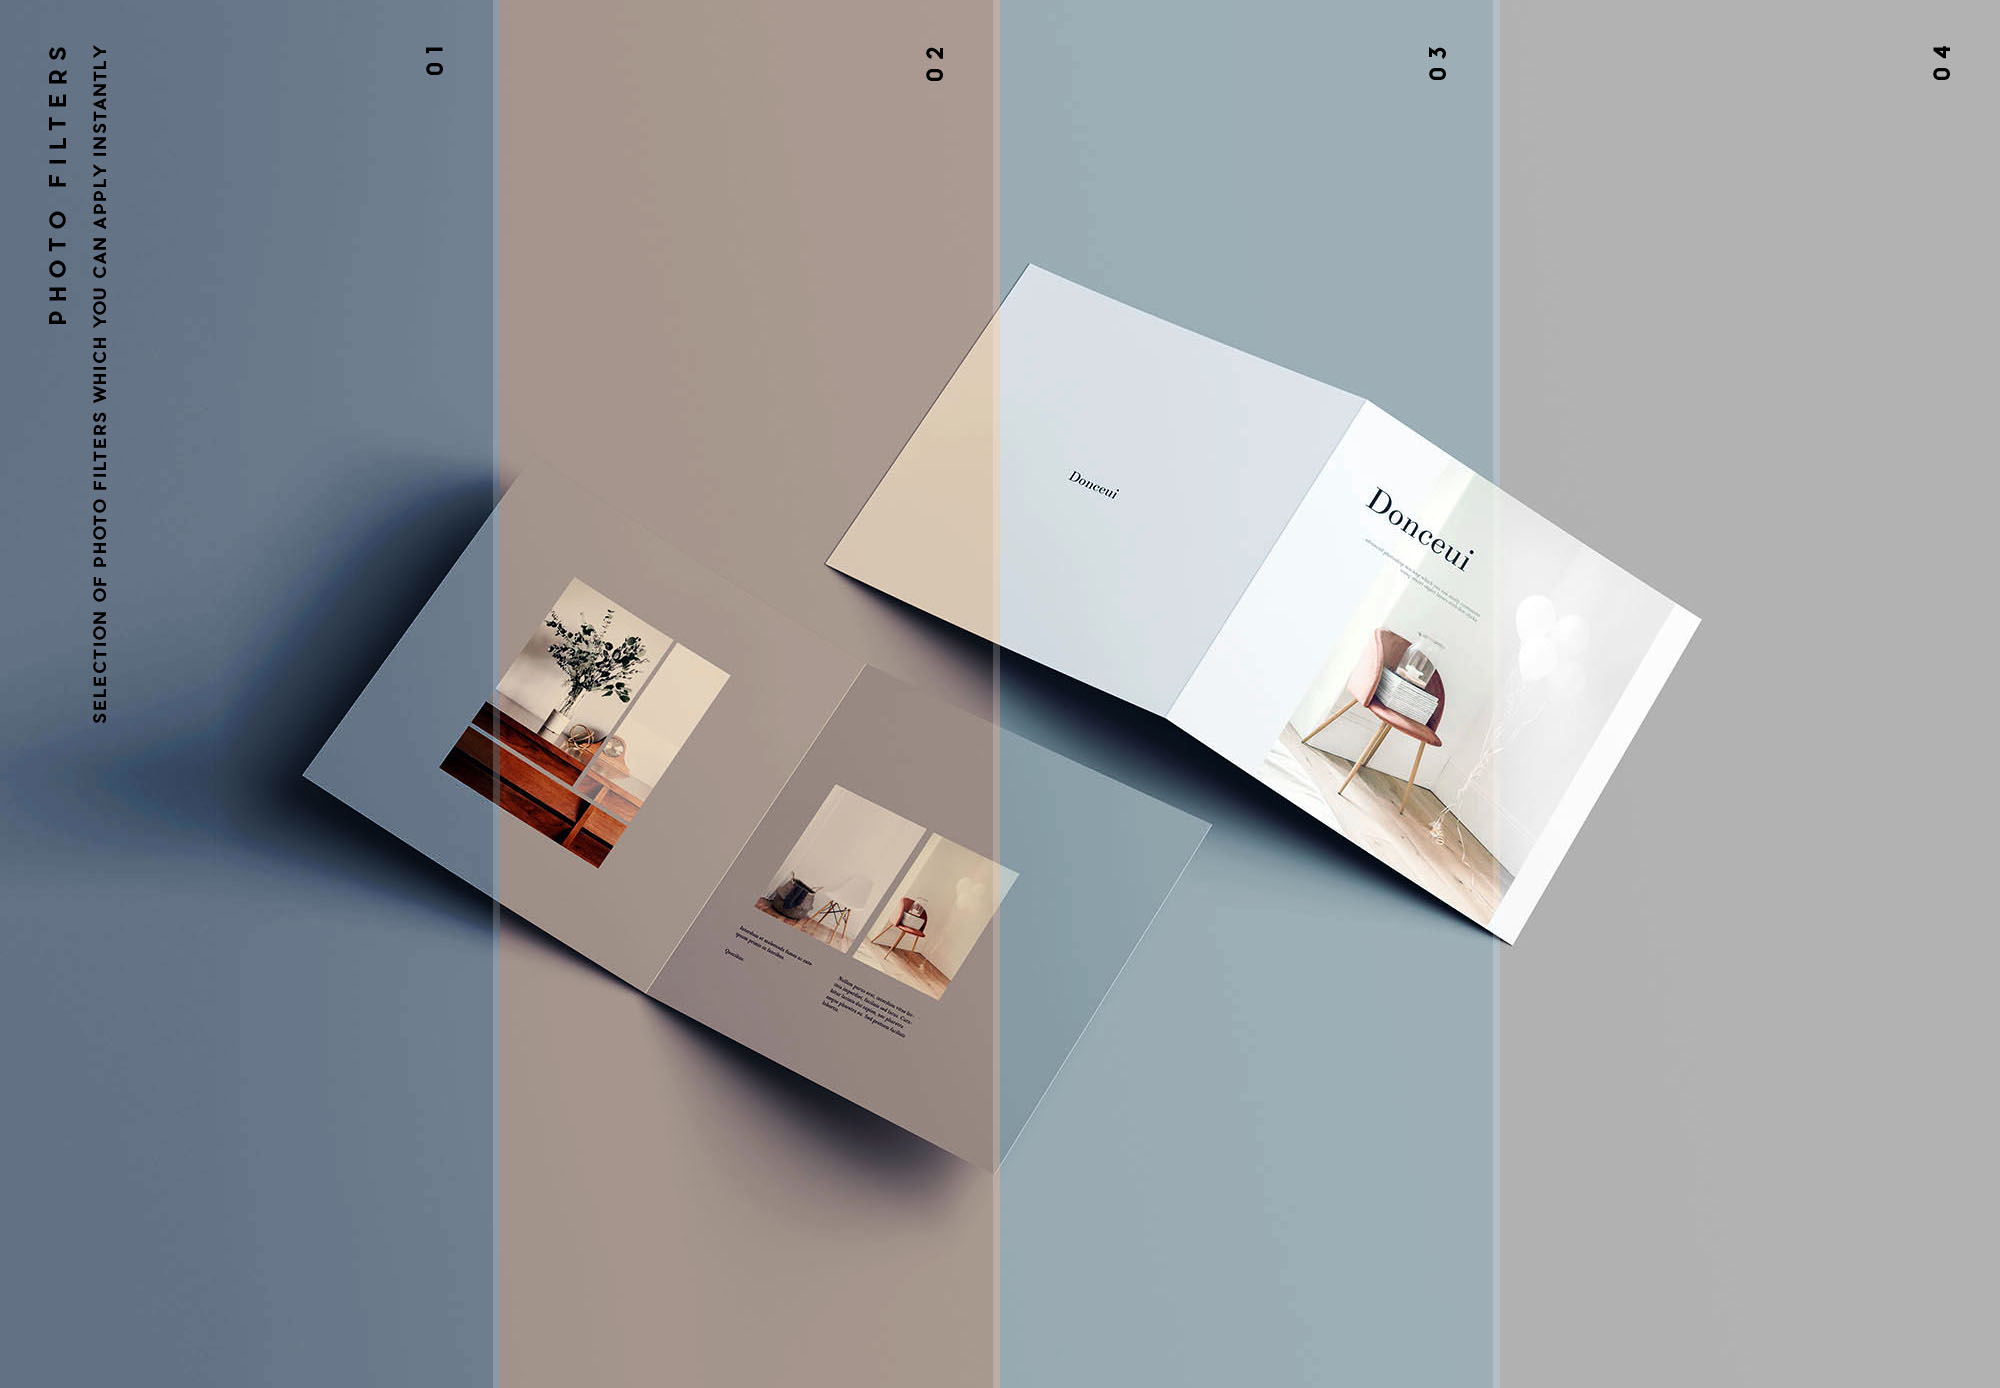 方形双折叠小册子封面&内页设计图样机蚂蚁素材精选 Square Bifold Brochure Mockup插图(10)